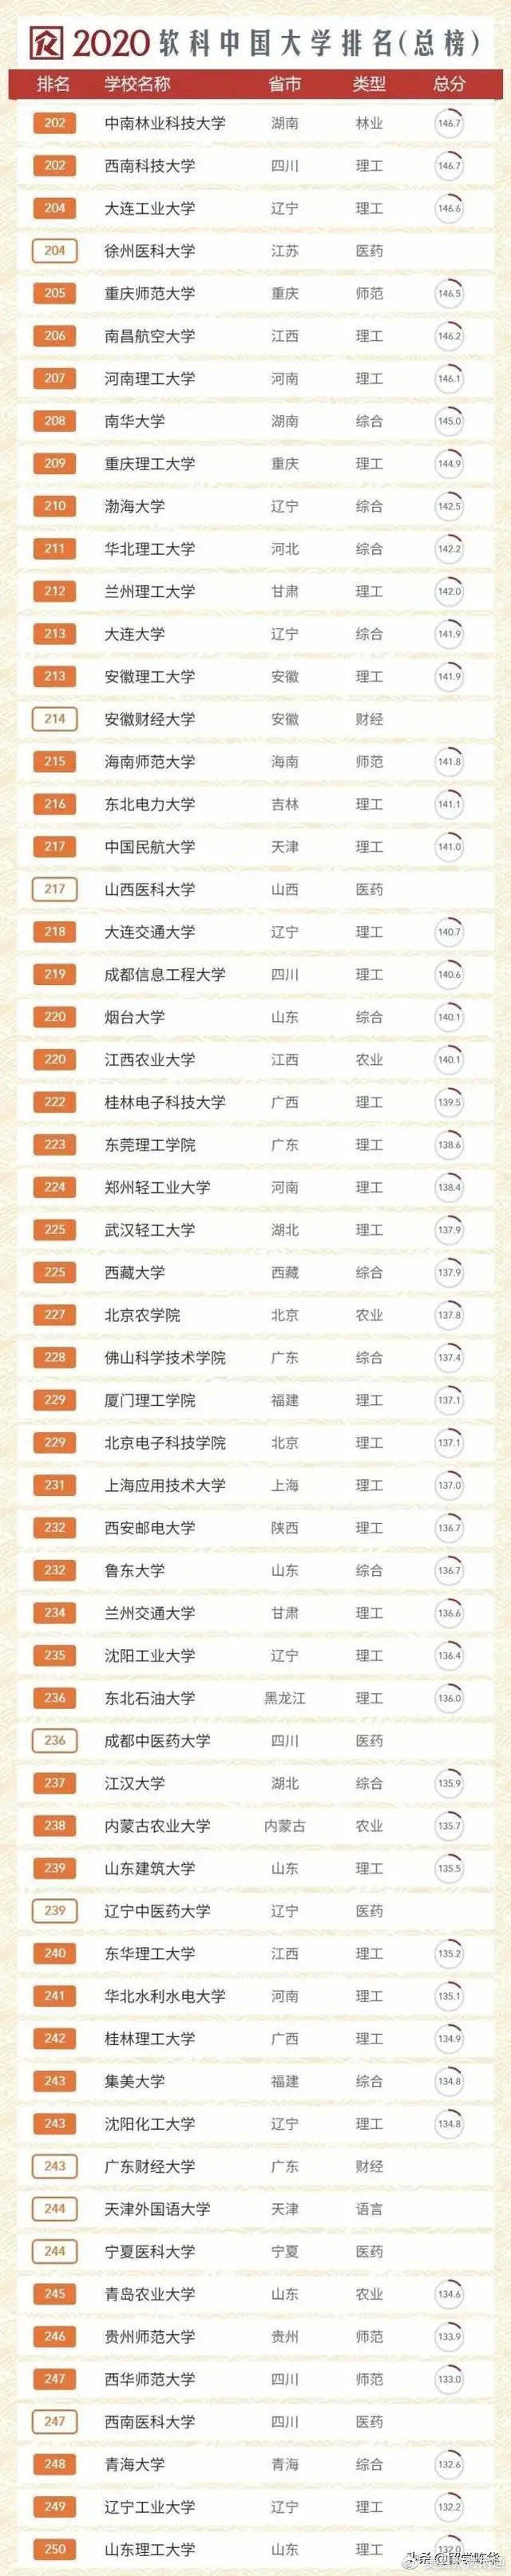 2020软科中国大学排名_2020软科中国最好大学排名300强榜单